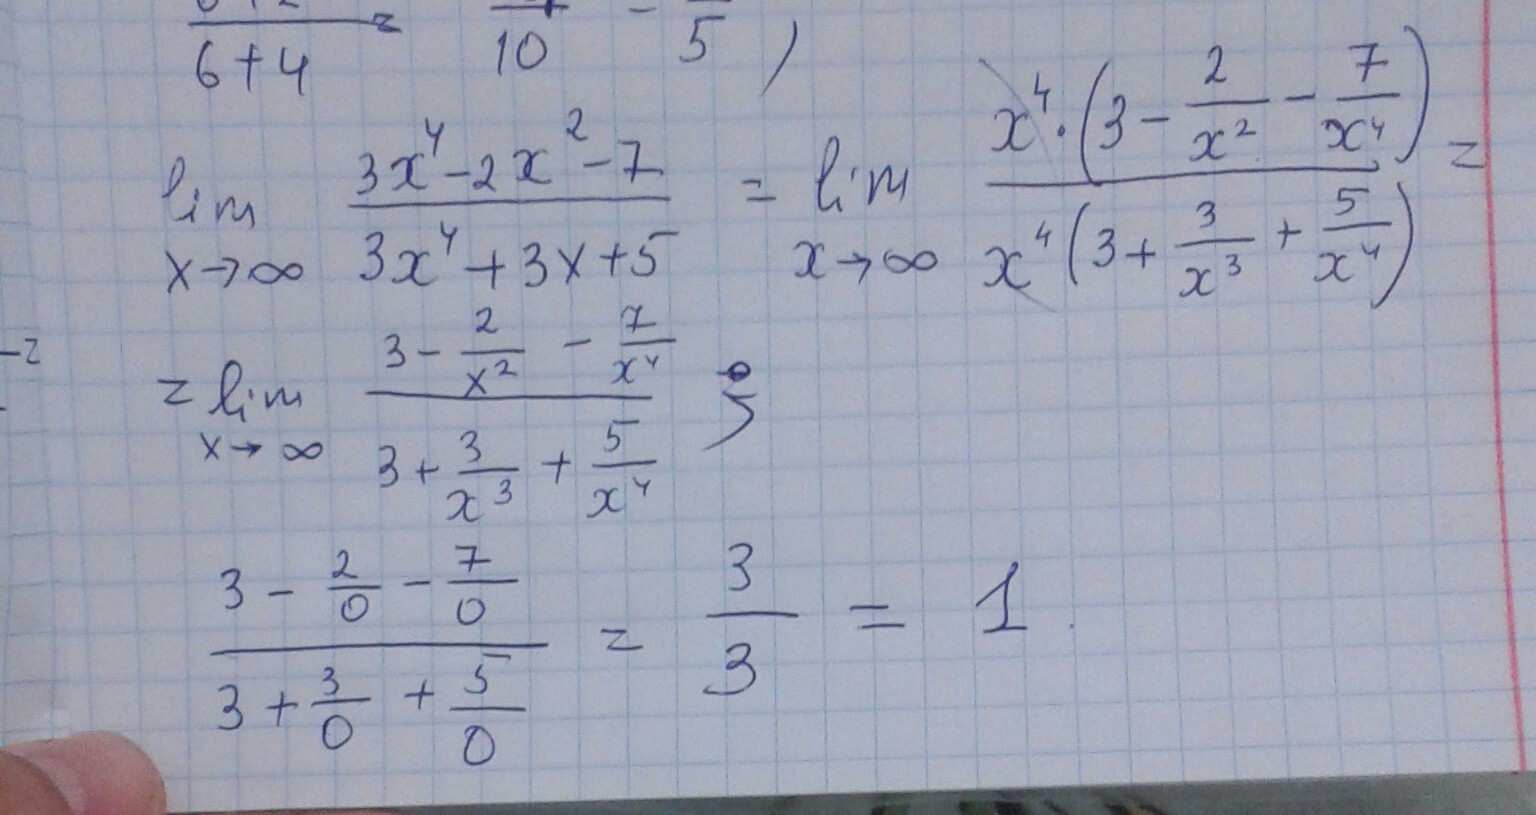 15 3х 3 7. Lim x стремится к бесконечности 2/x 2+3x. Lim x стремится к бесконечности x^2-4x+3/x+5. Lim x стремиться к бесконечности ( 2x/2x-3)^3x. Lim x стремится к бесконечности 3+x-5x4.